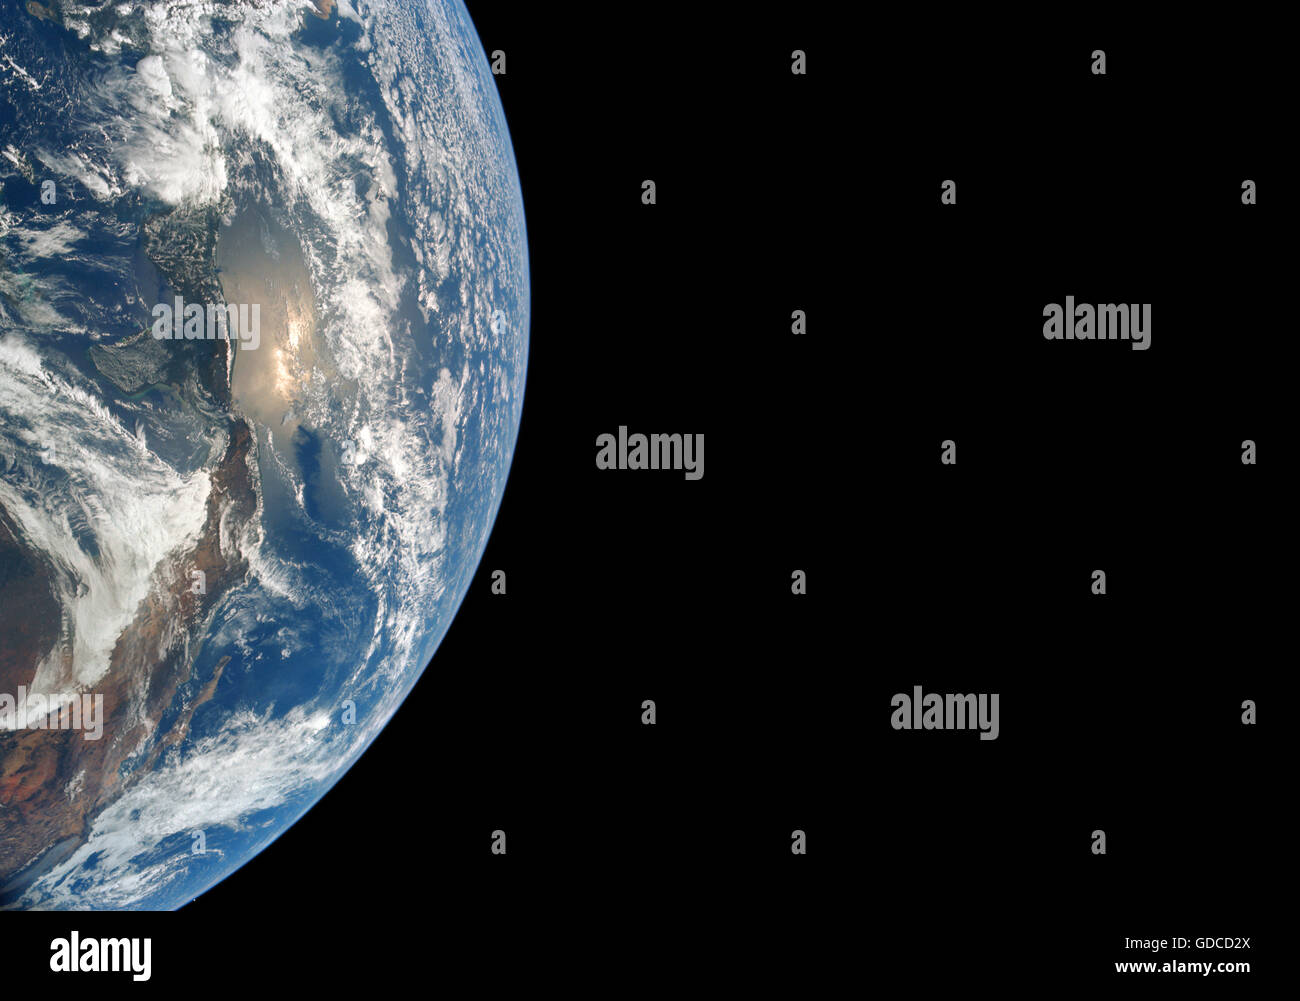 La tierra vista desde el espacio. Alta resolución de imagen mejorada. Única versión mejorada y optimizada de la imagen original de la NASA Foto de stock